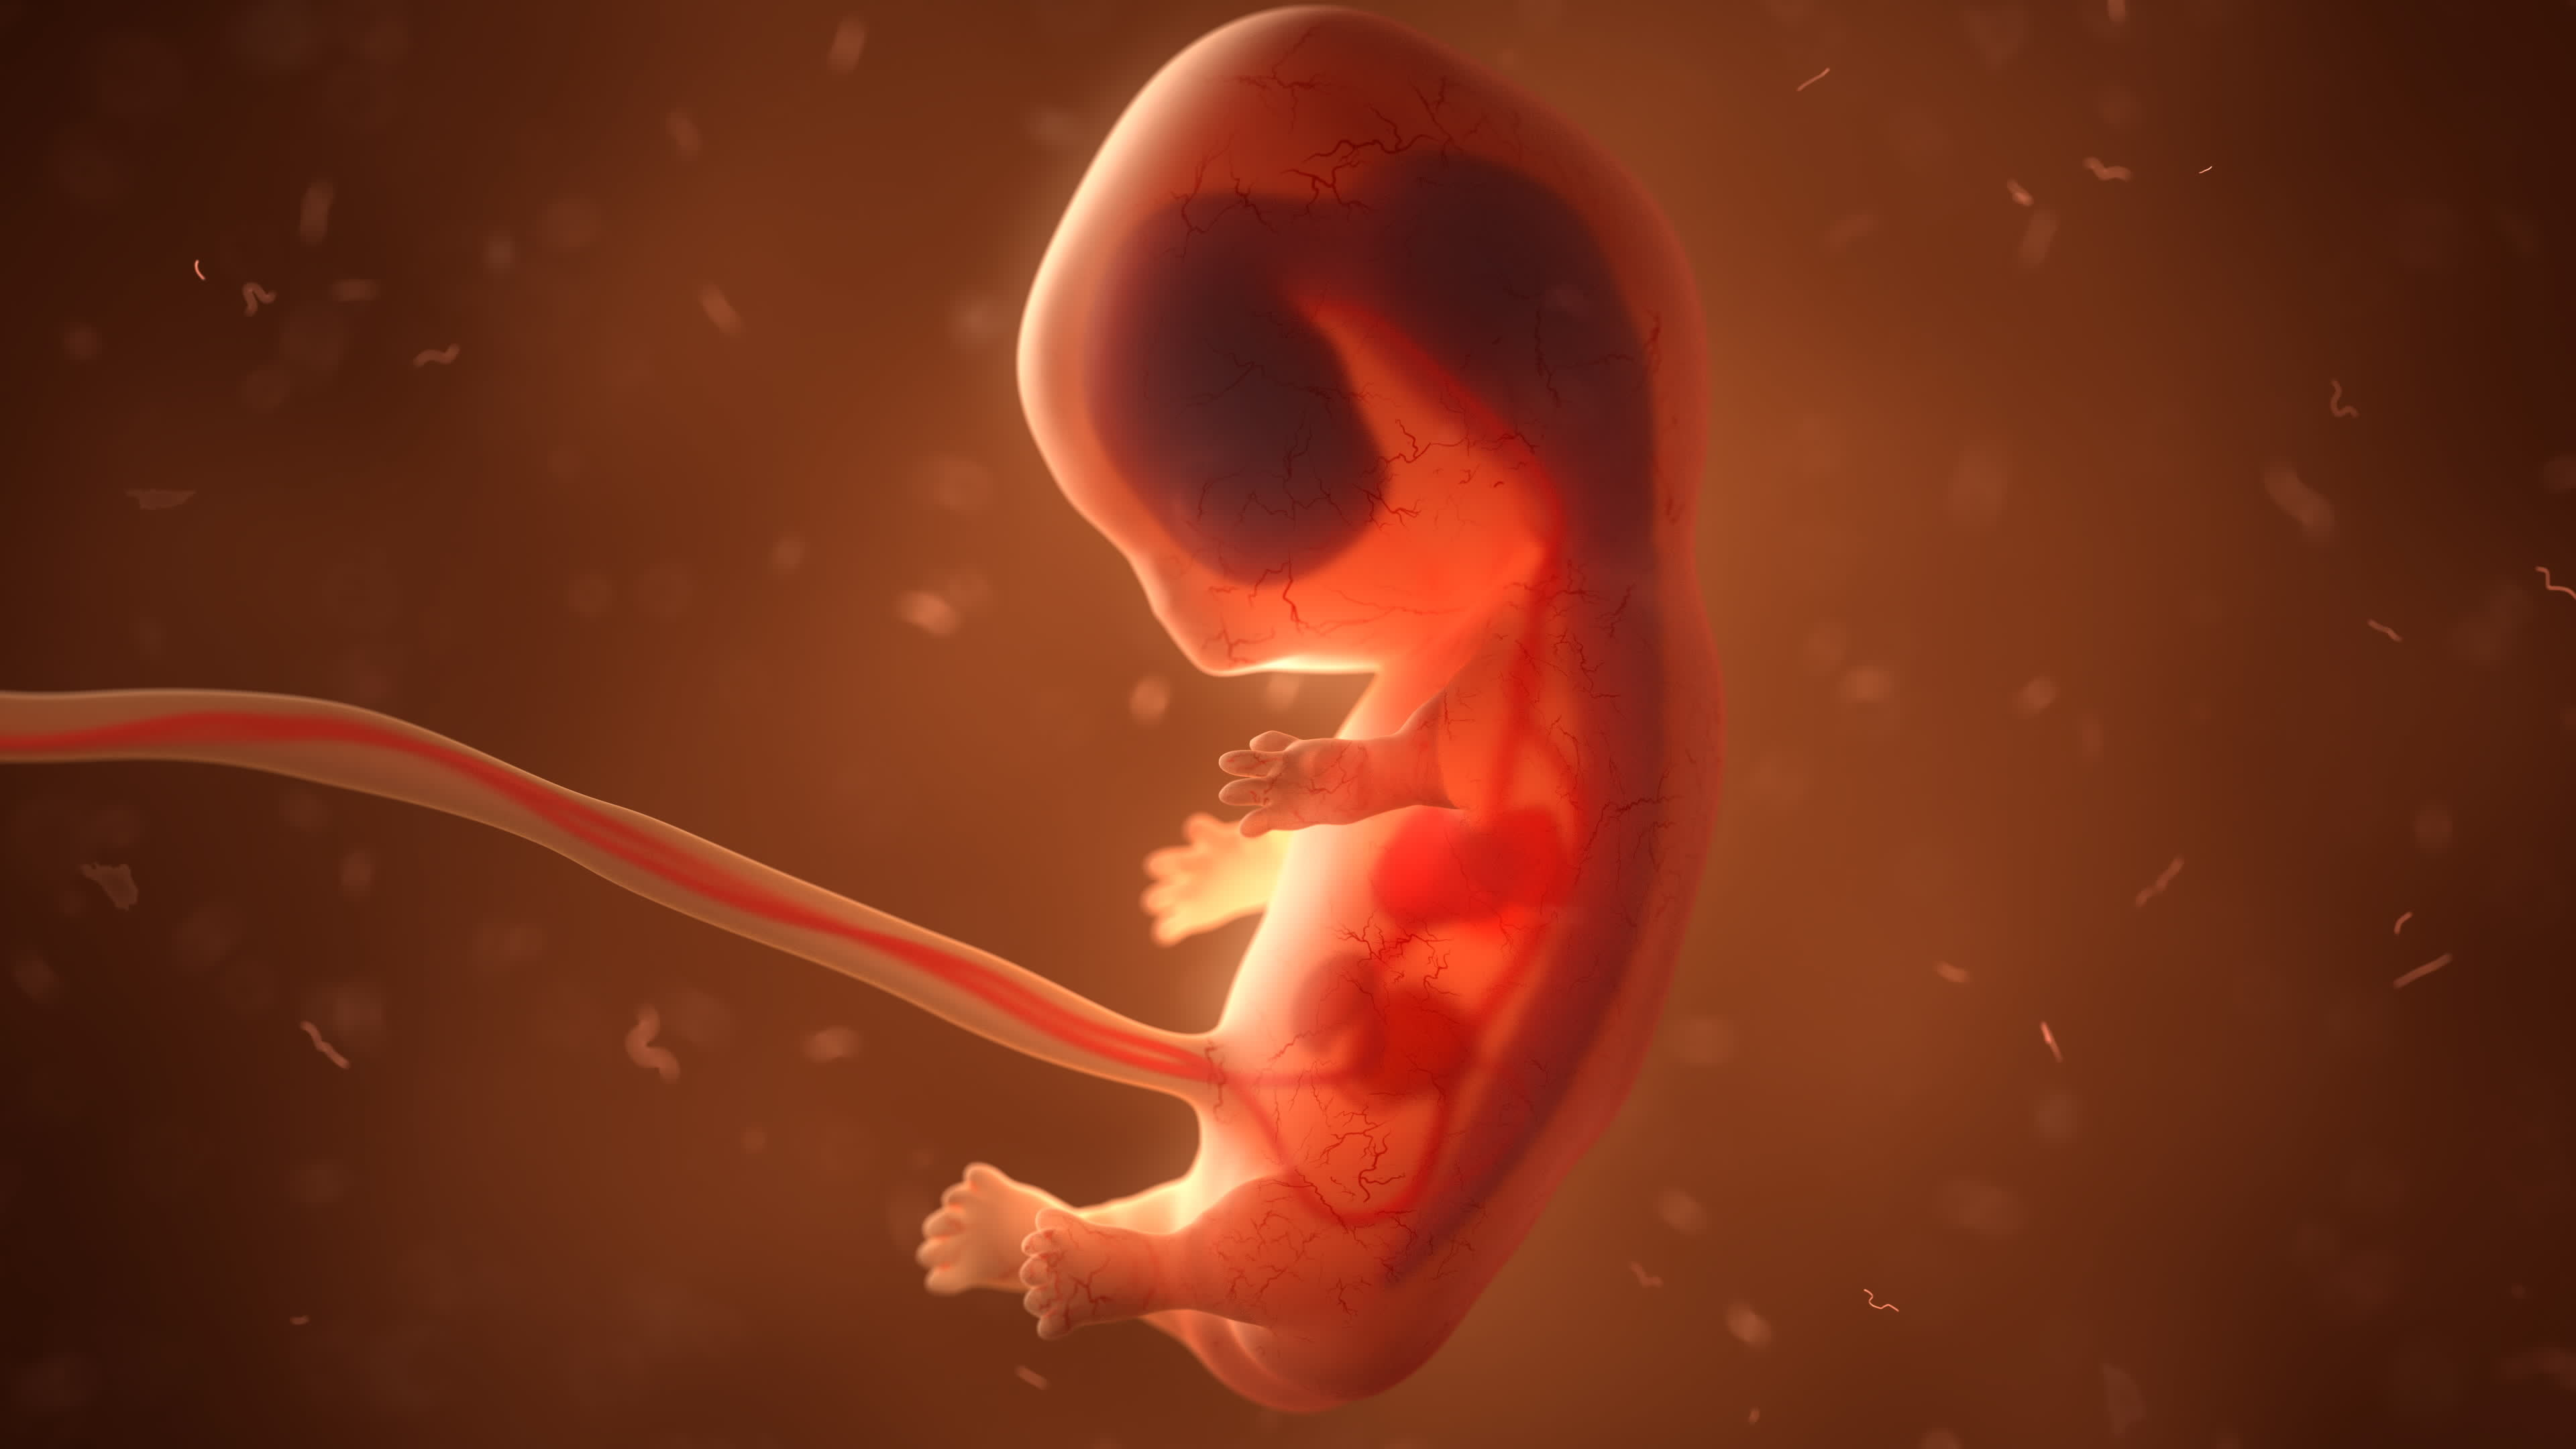 À la septième semaine de grossesse, on observe des muscles de lézard chez l'embryon humain qui disparaissent ensuite. © unlimit3d, Adobe Stock